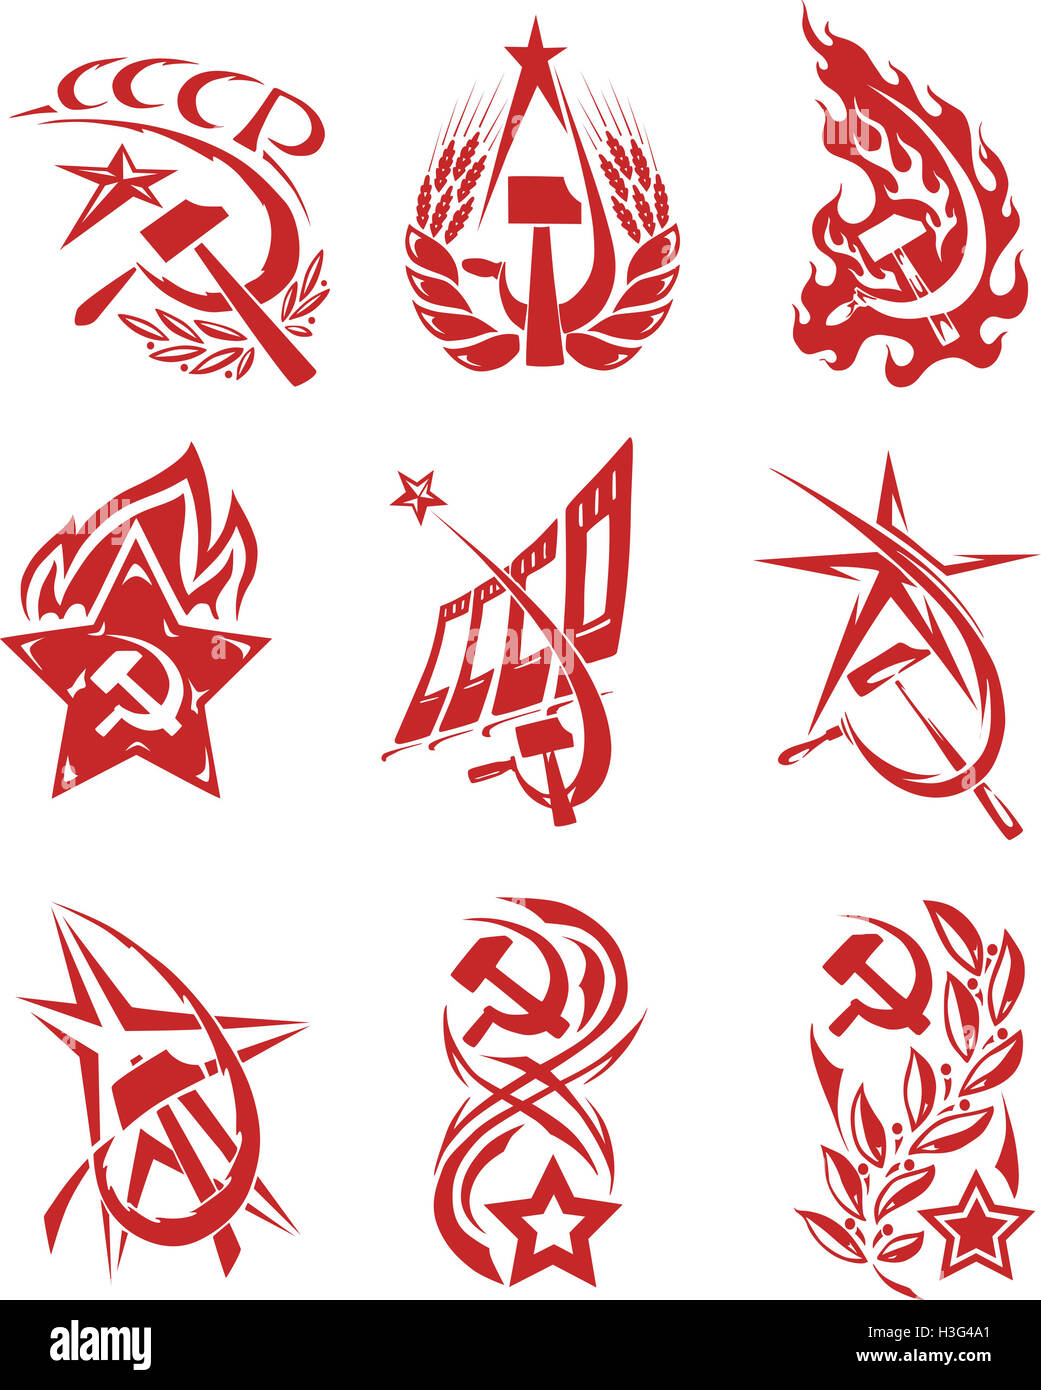 Rote Farbe sowjetischen Symbole mit Sternen, Fahnen und Sichel und hammer Stockfoto